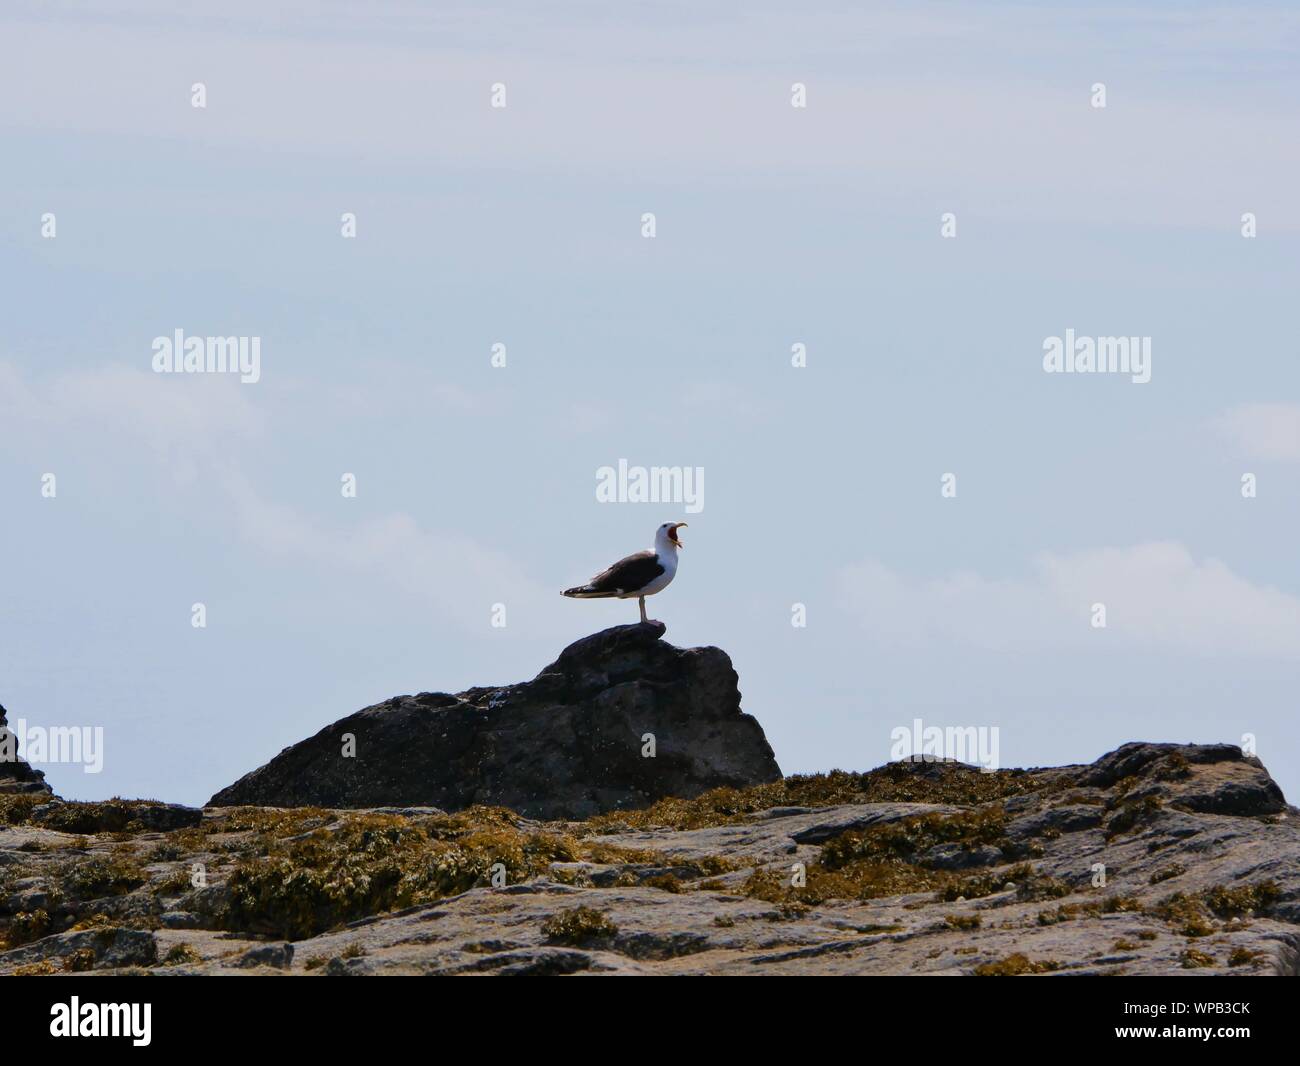 Goéland percher sur un rocher , goéland bec ouvert , goéland qui hurle , goéland sur un rocher au bord de la mer , goéland sur l'île de molène Stock Photo